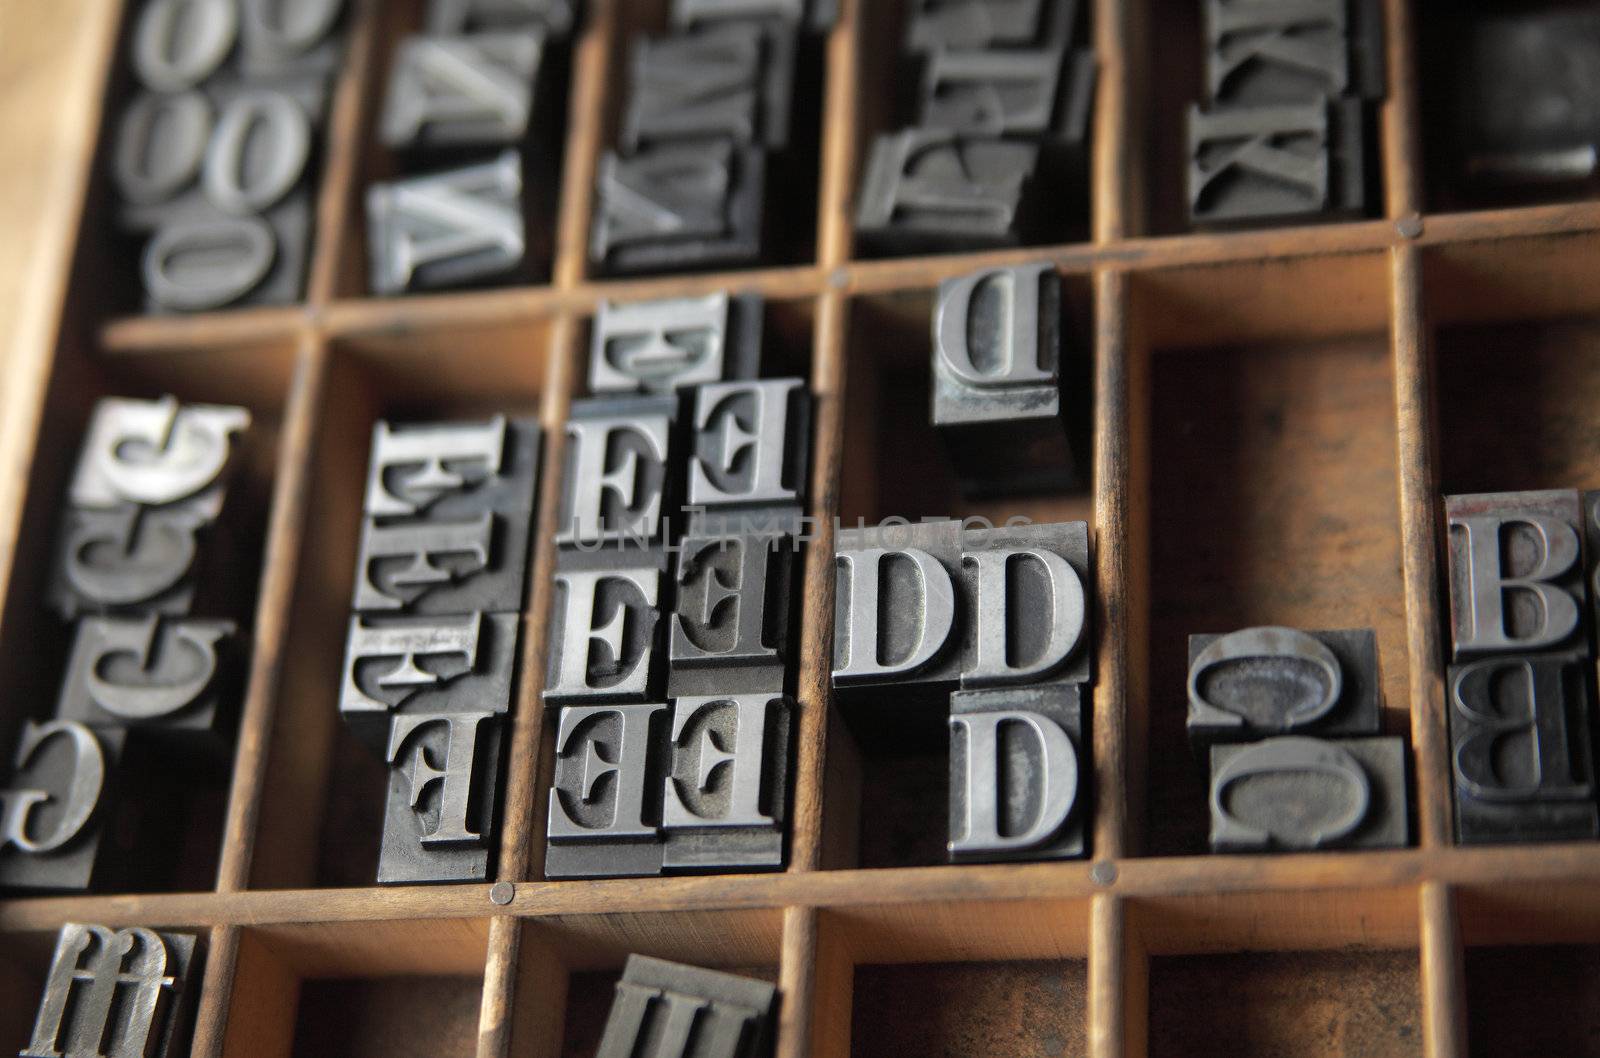 lead letterpress type by nebari